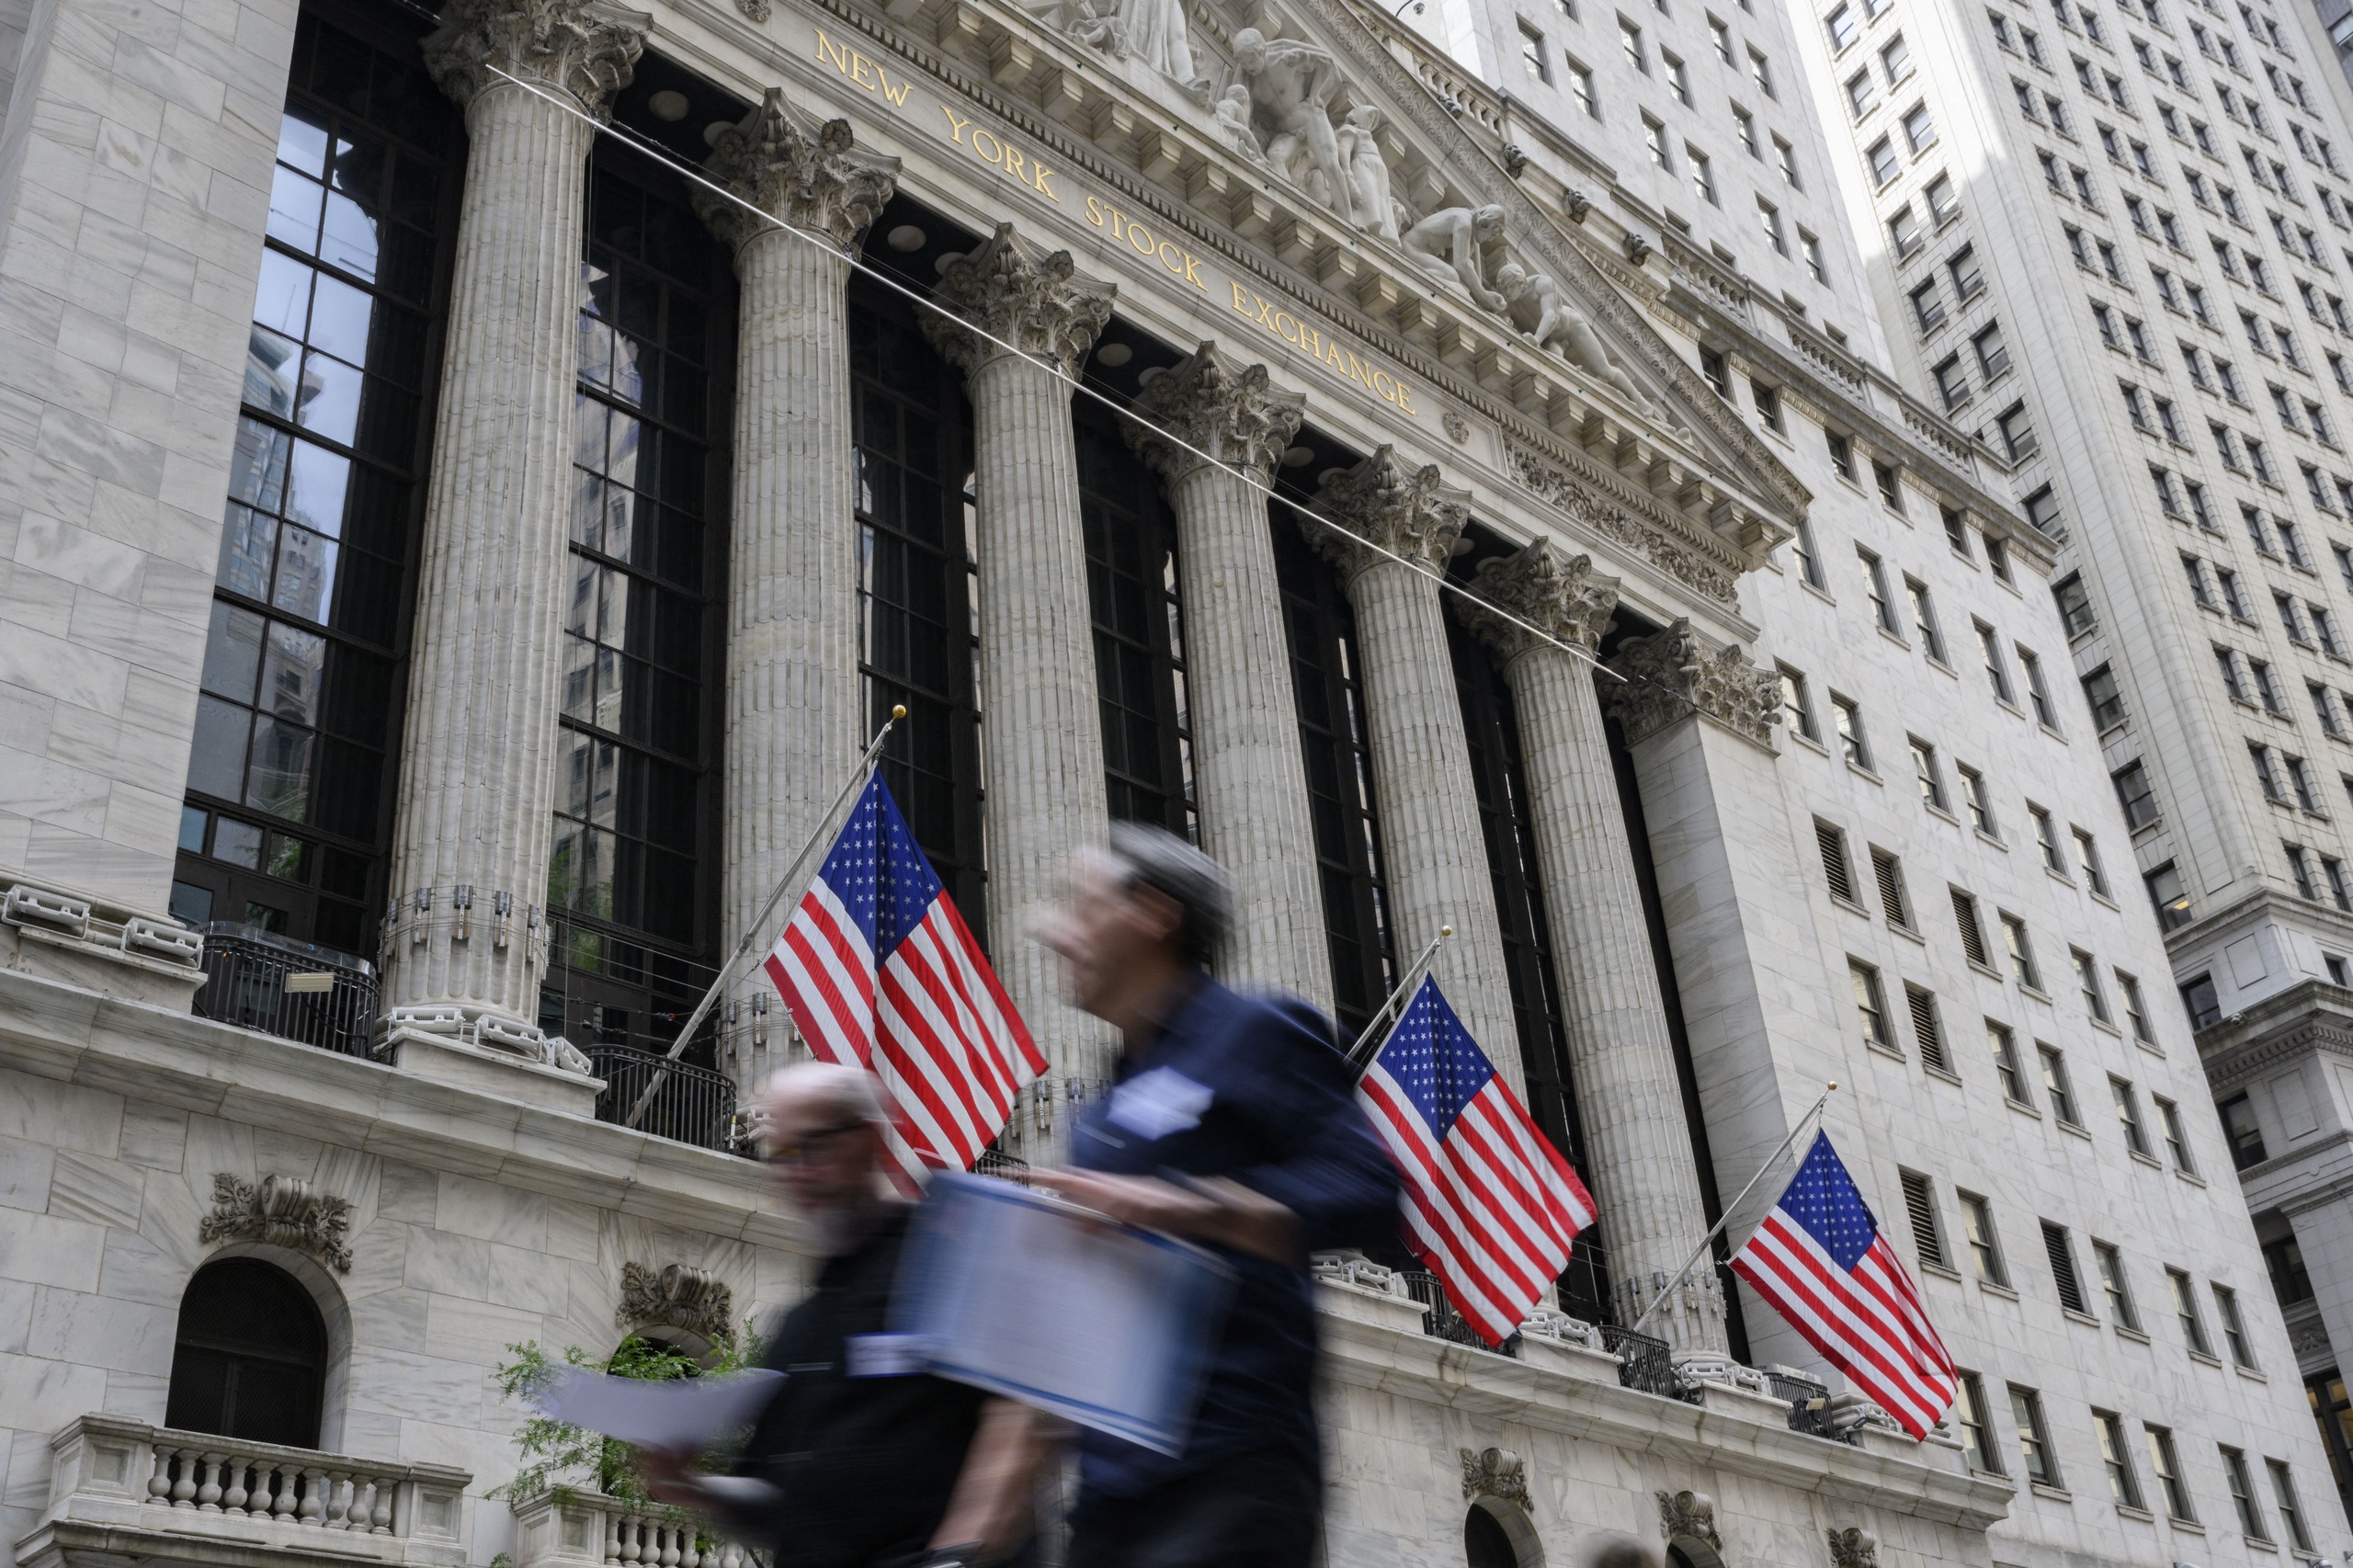 De aandelenbeurzen in New York gingen woensdag opnieuw omlaag. Beleggers reageerden op de nieuwste inflatiecijfers uit de Verenigde Staten.